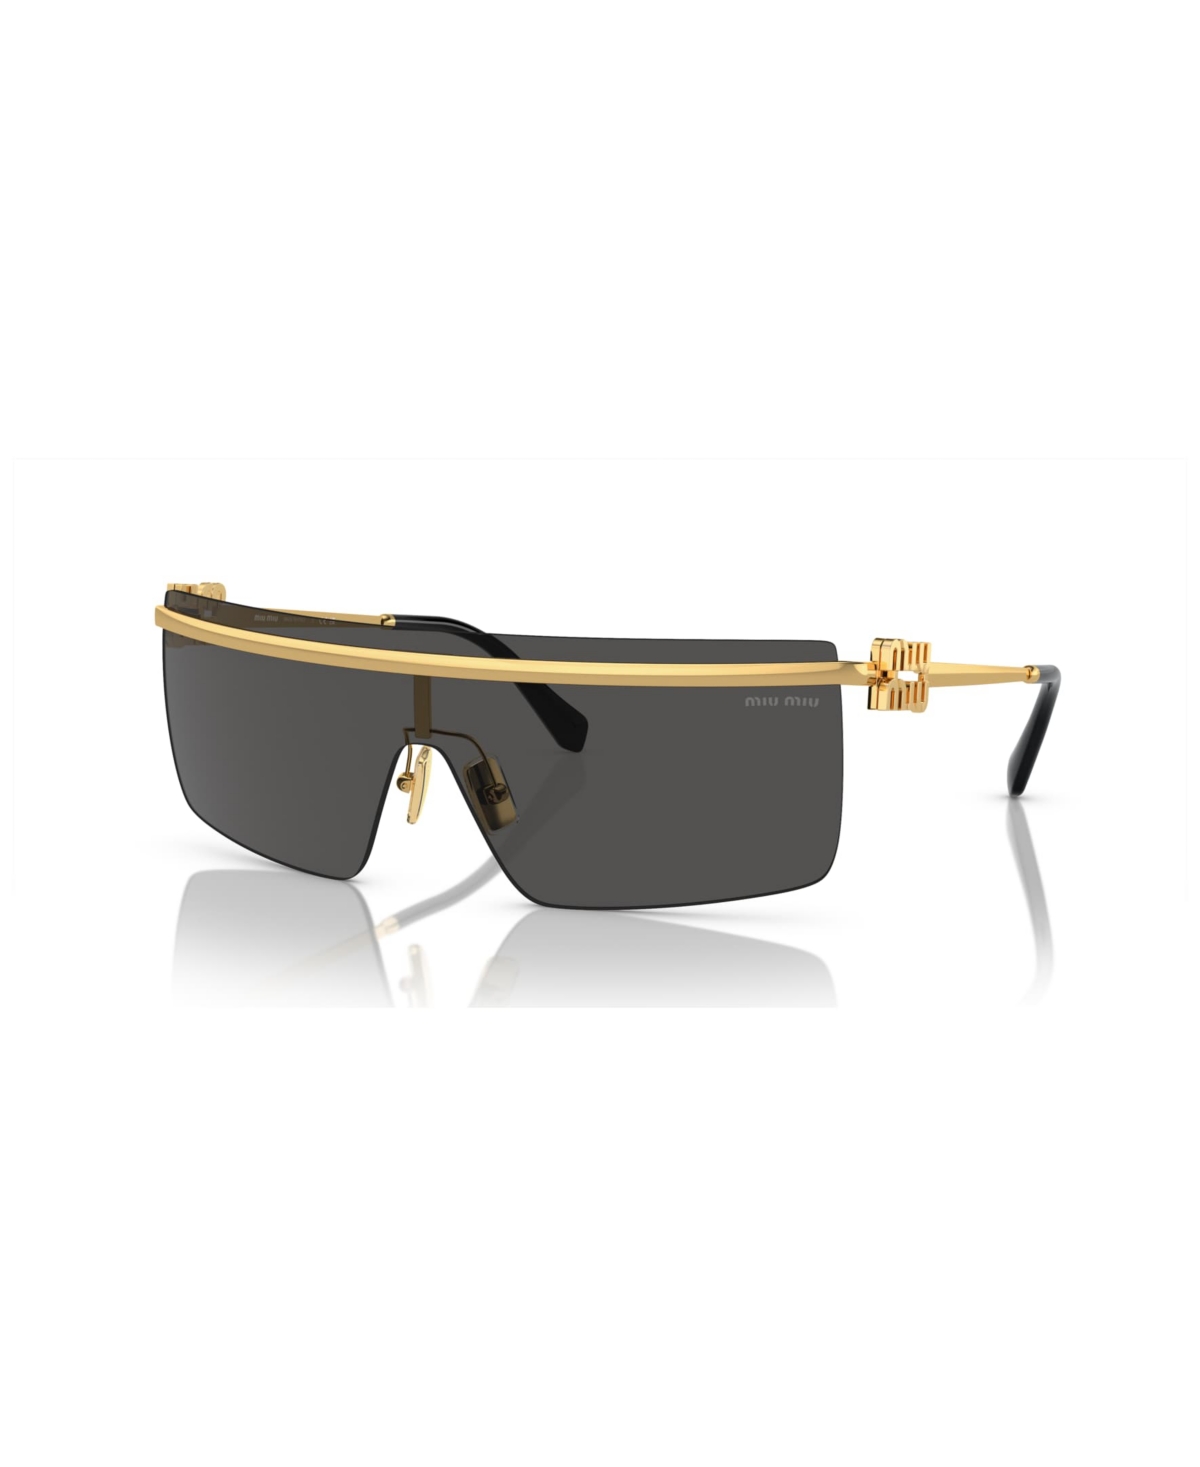 Miu Miu Women's Sunglasses Mu 50zs In Gold